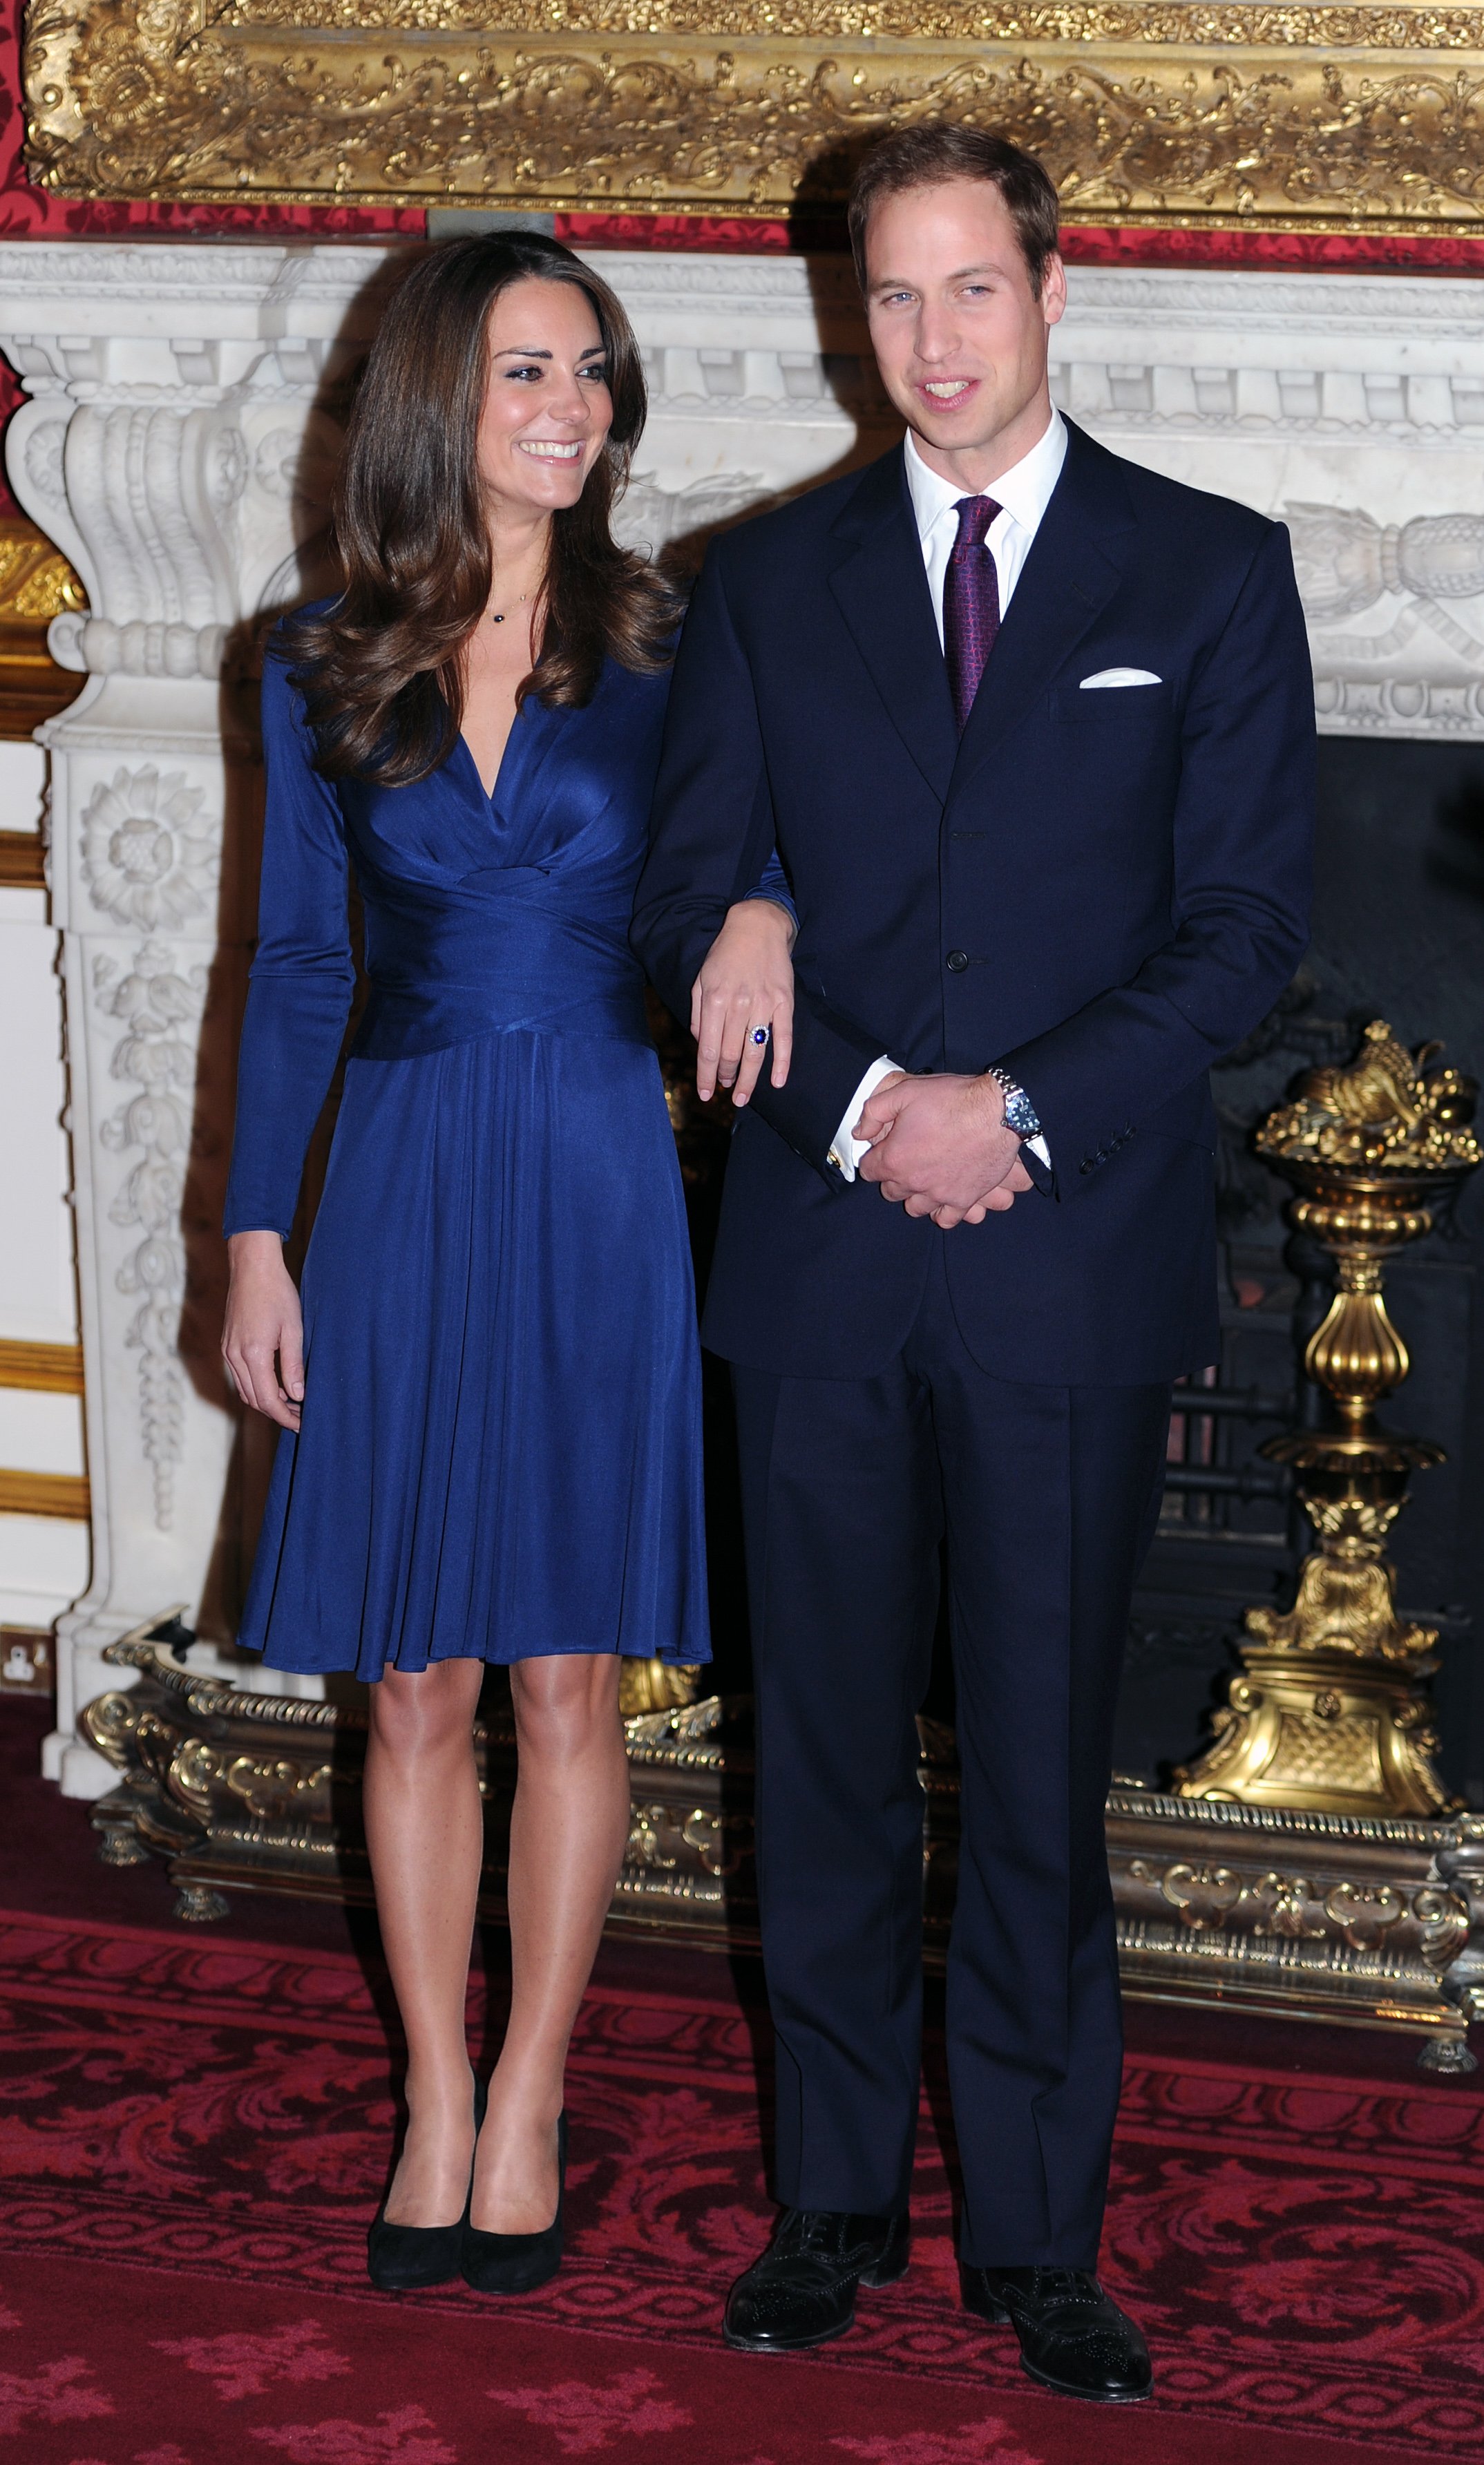 Le Prince William et Kate Middleton posent pour des photos dans les appartements d'État du Palais St James alors qu'ils annoncent leurs fiançailles le 16 novembre 2010 à Londres, en Angleterre. | Source : Getty Images      